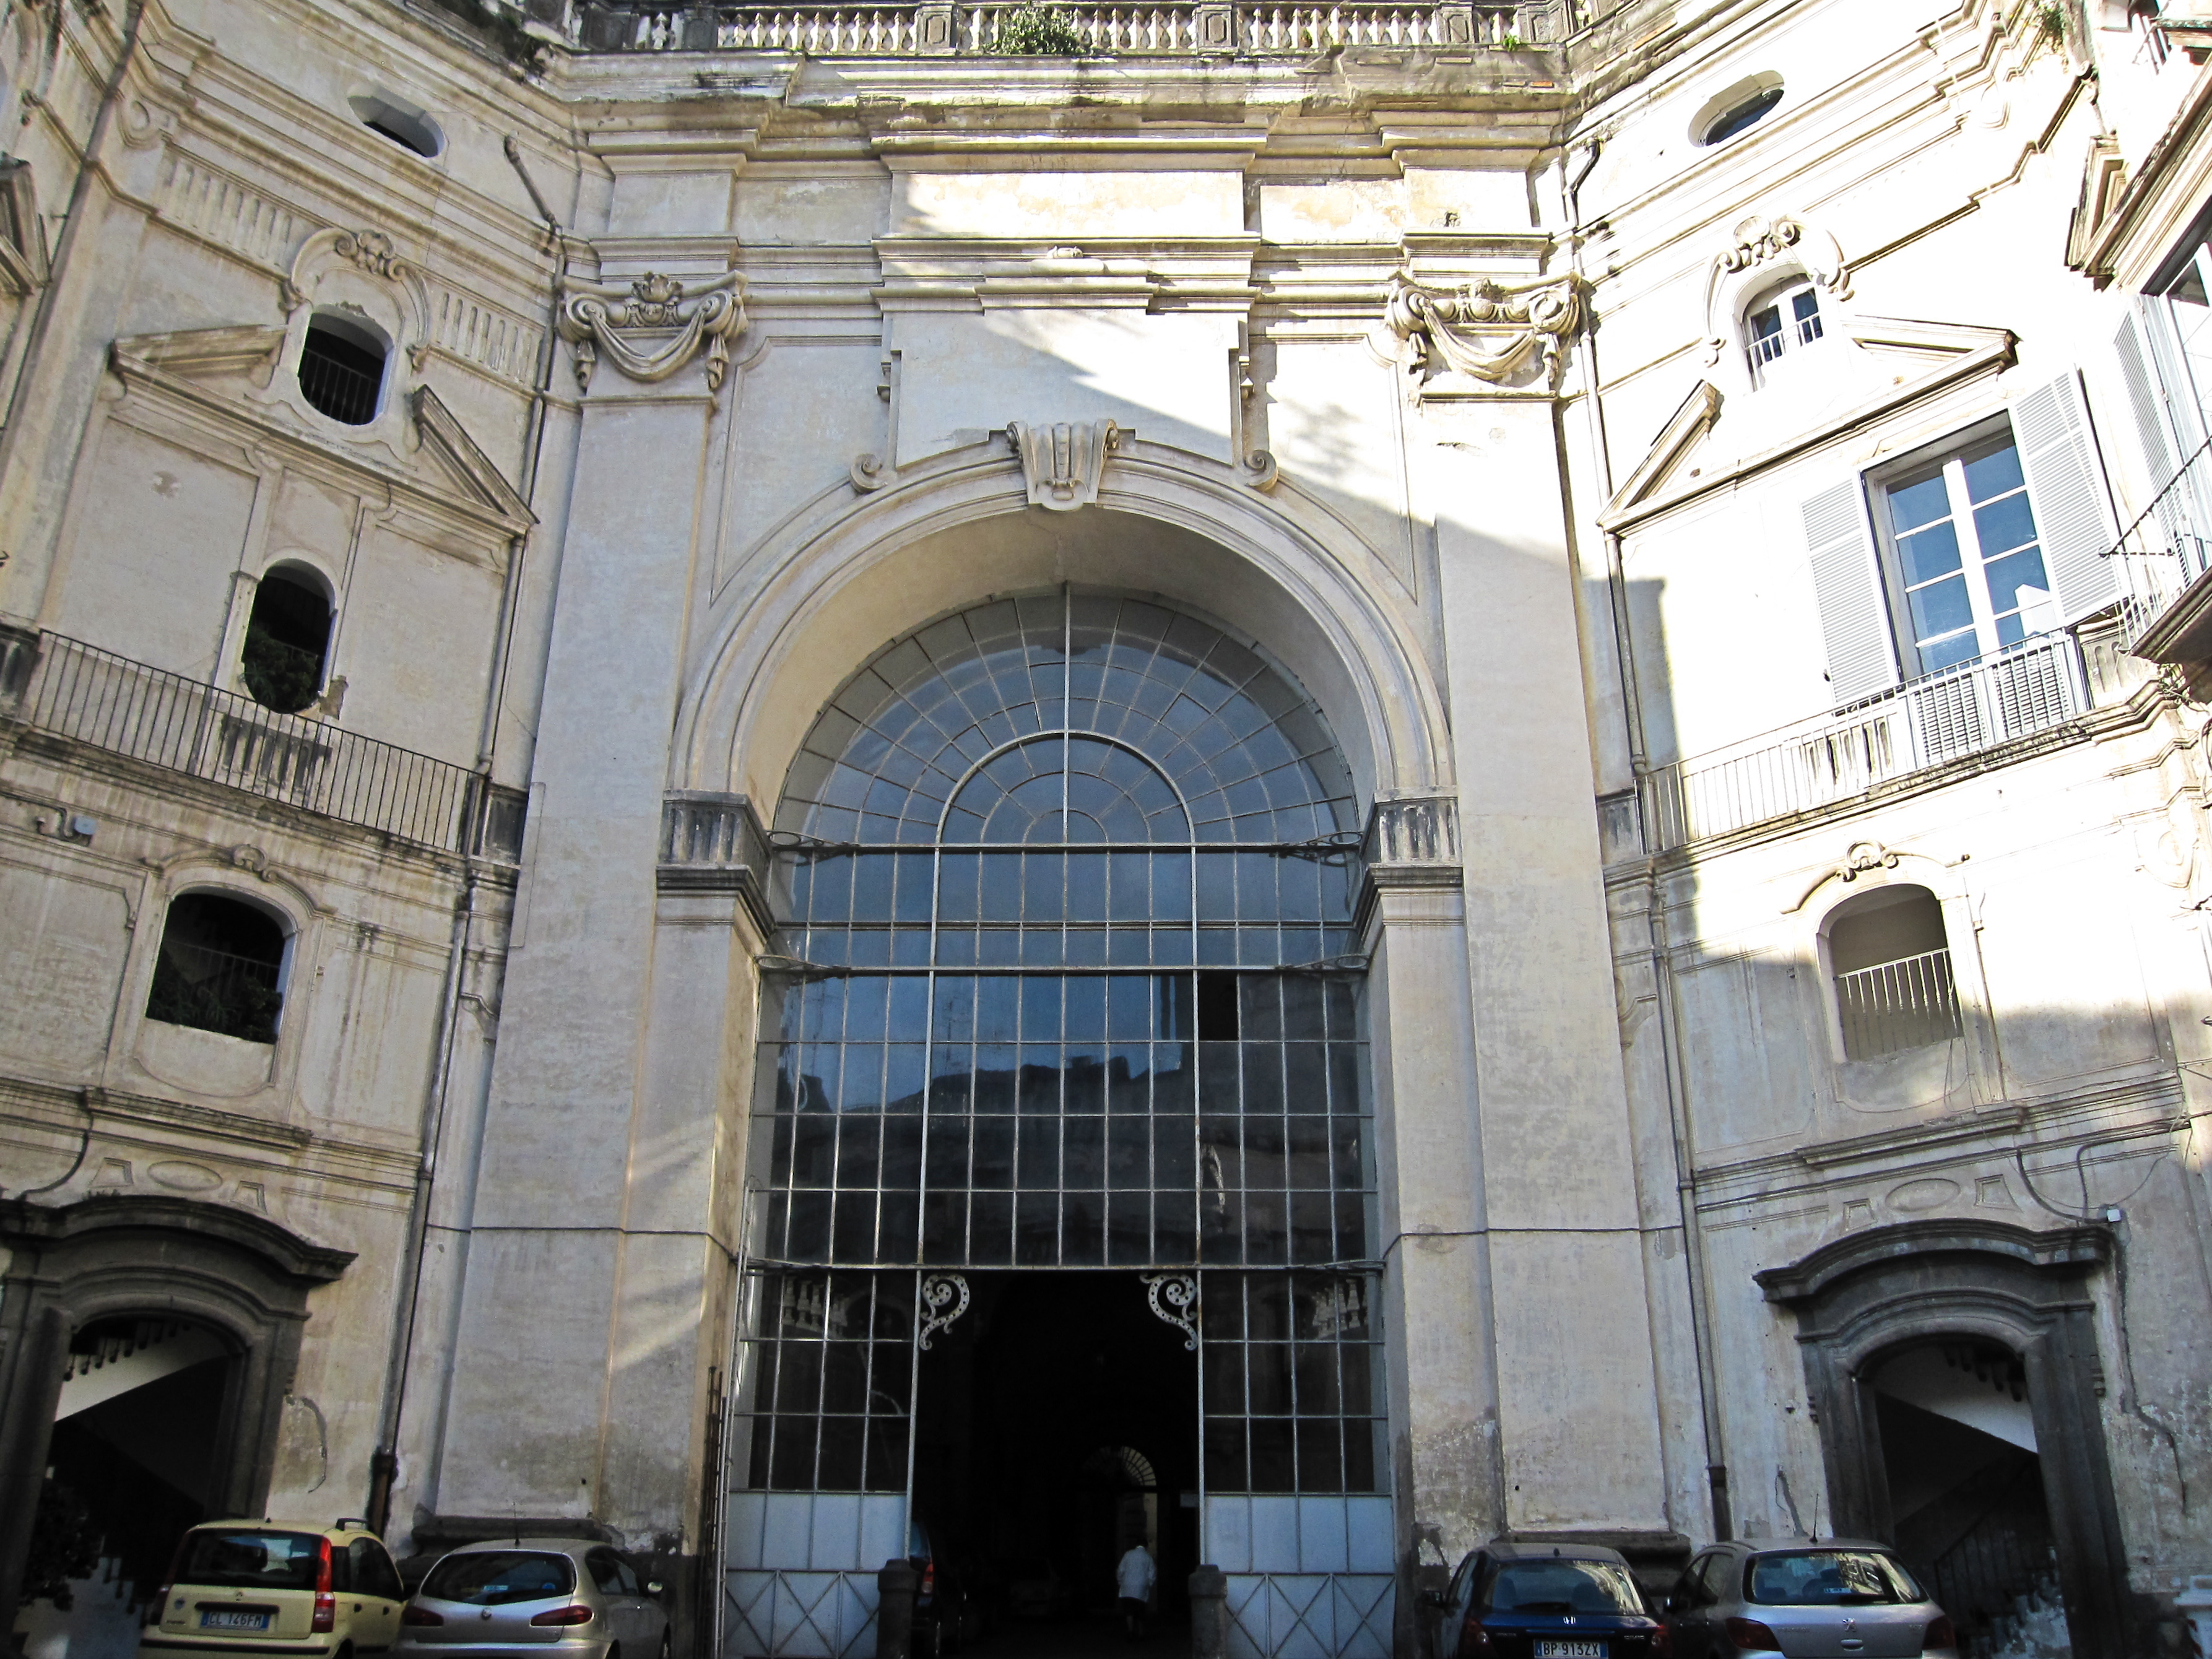 Armando Mancini, Palazzo Serra di Cassano (Napoli). La facciata sul cortile di accesso da Via Egiziaca, 2010, fotografia digitale